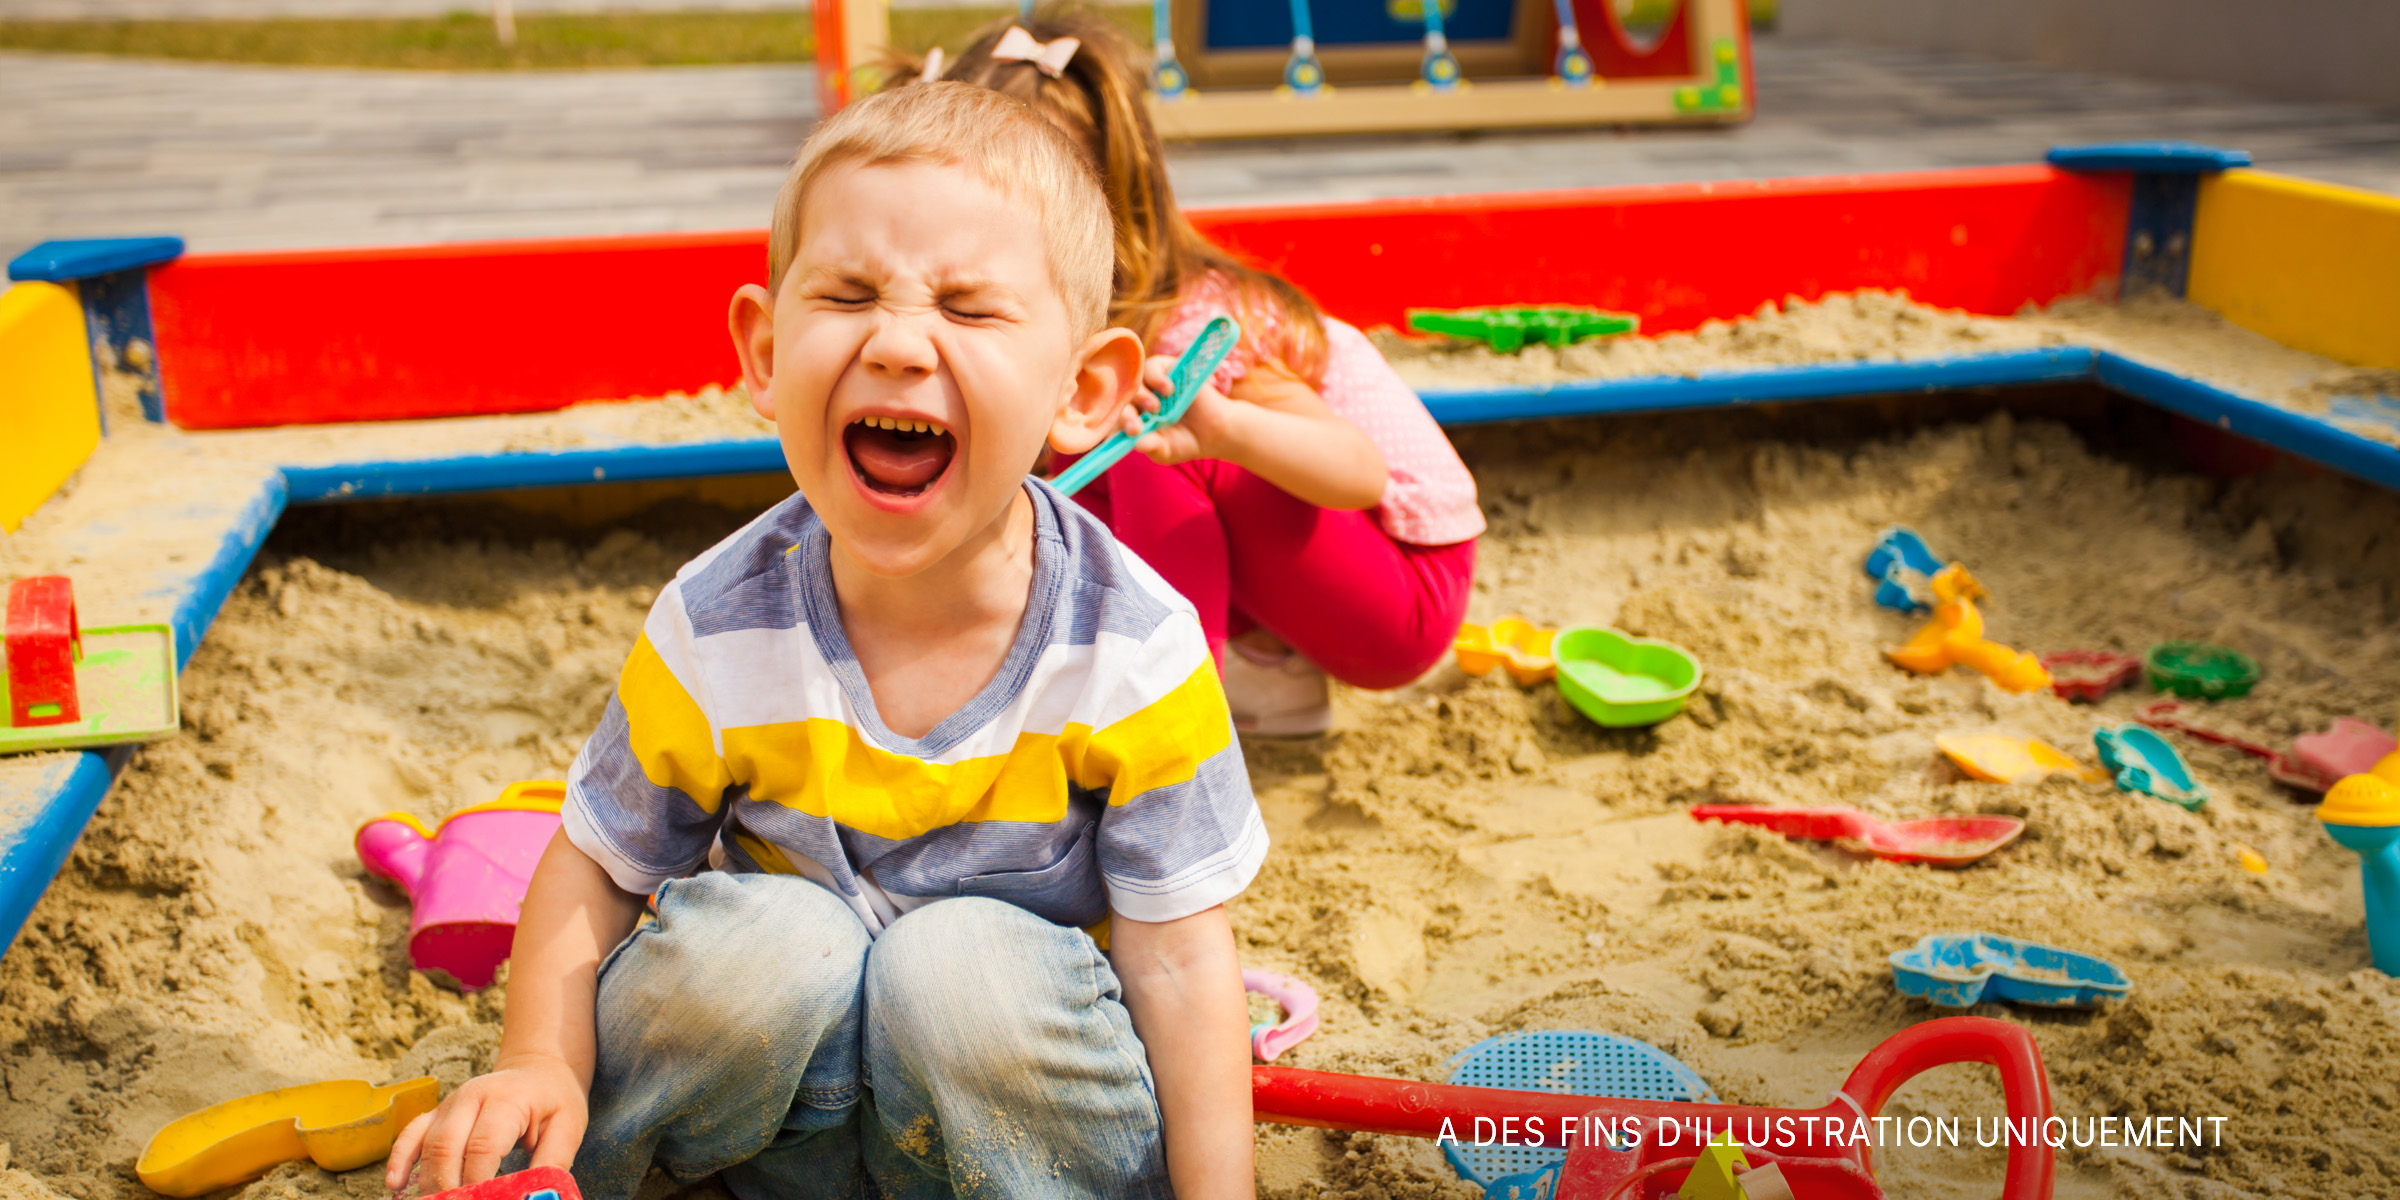 Un petit garçon jouant dans un bac à sable | Source : Shutterstock